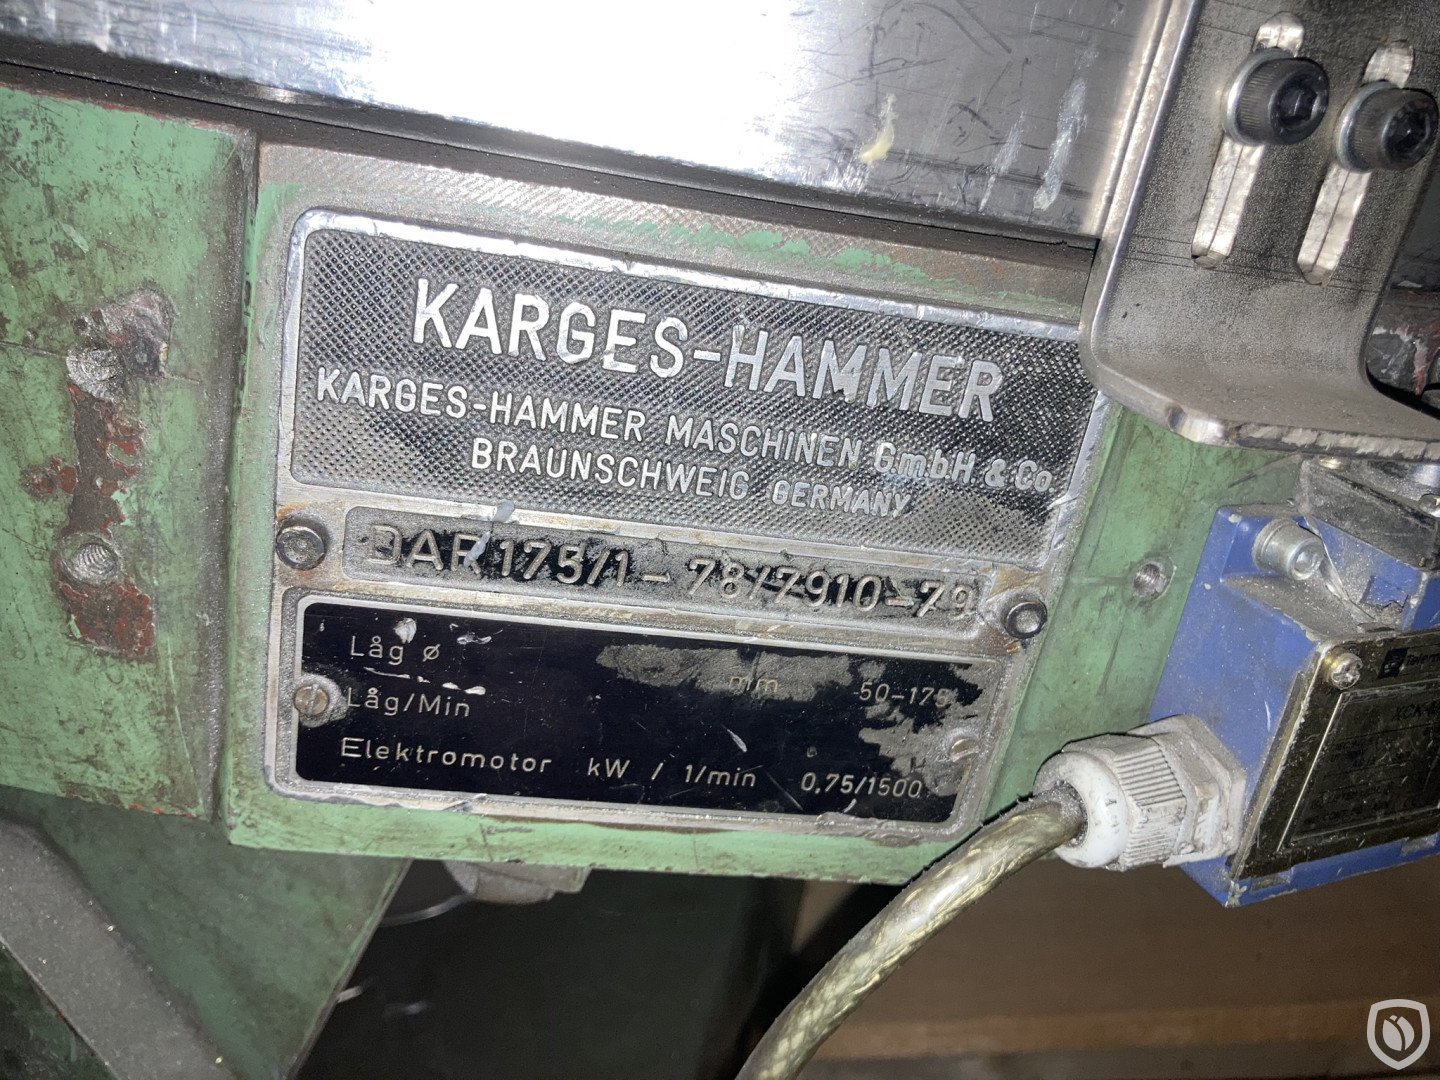 Karges Hammer P 250